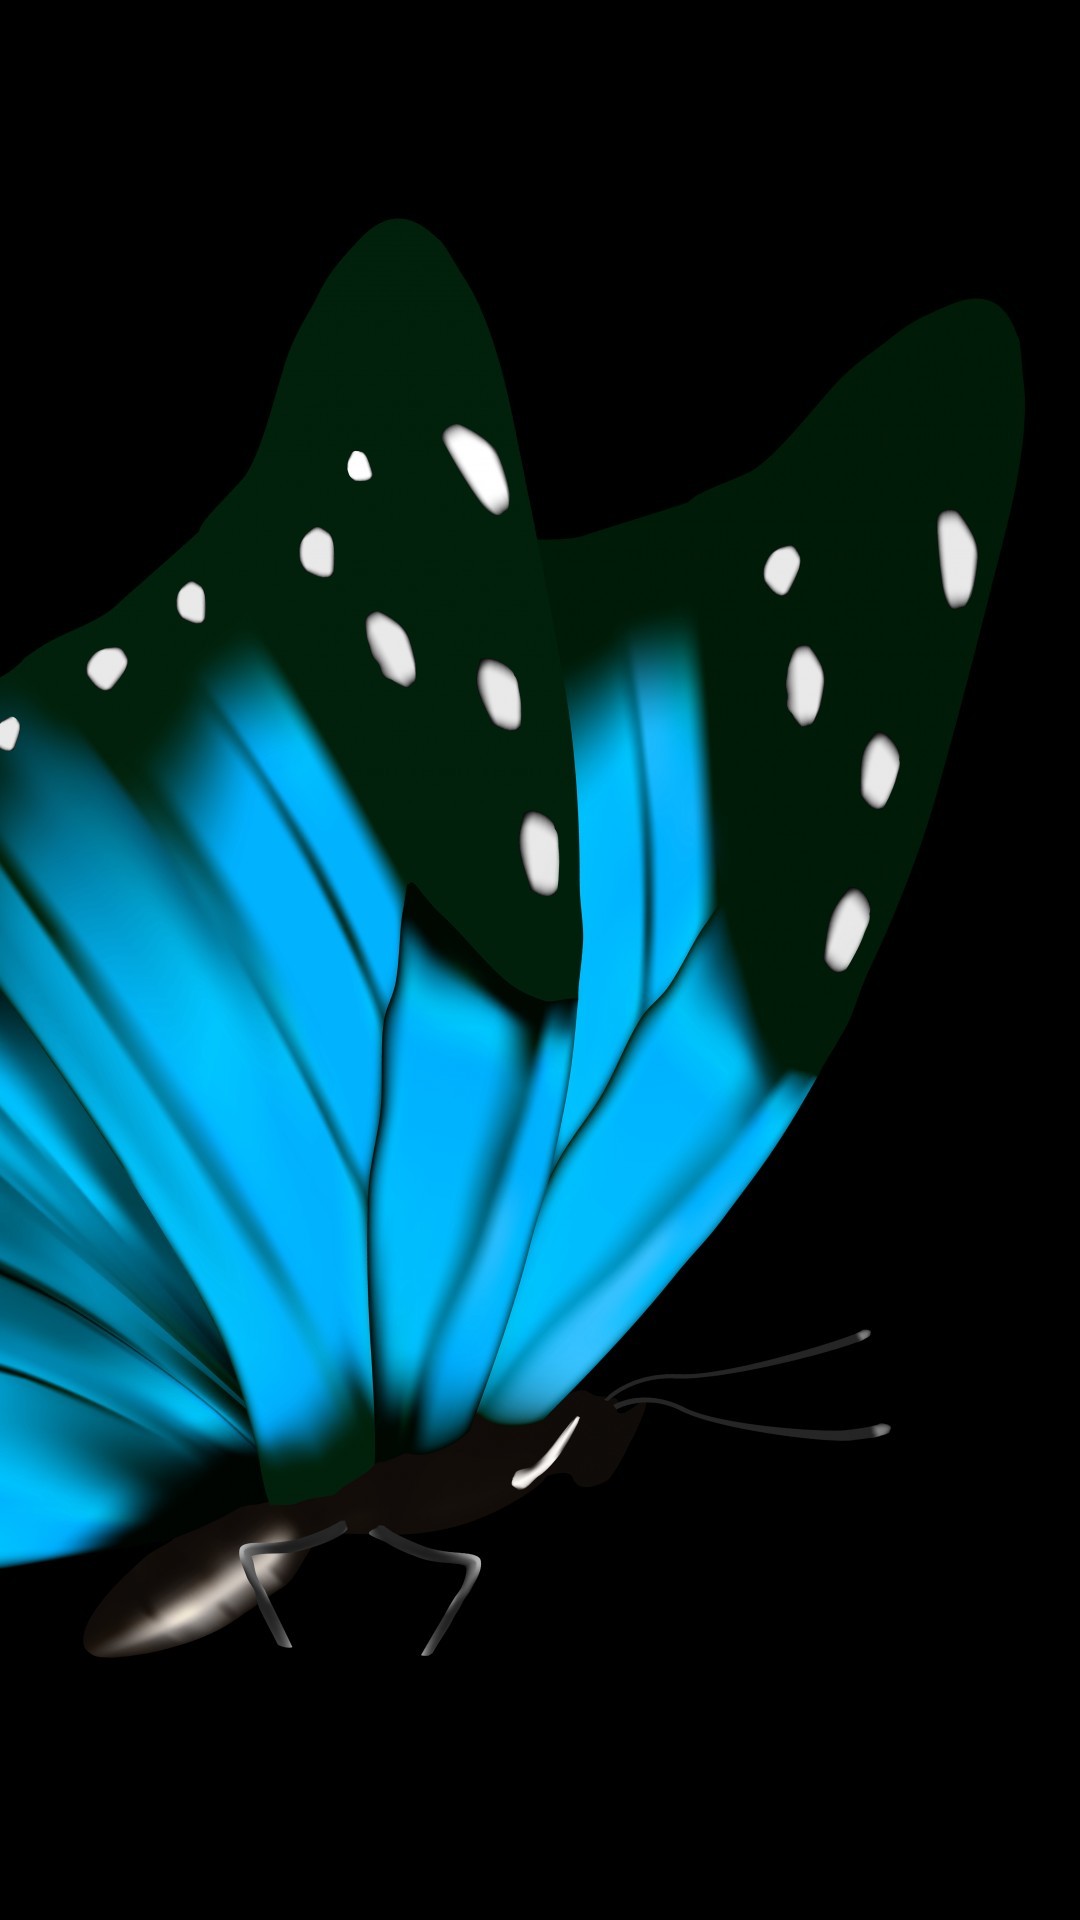 1080x1920 Download Blue ties and butterflies 2015, 3 blue butterflies wallpaper